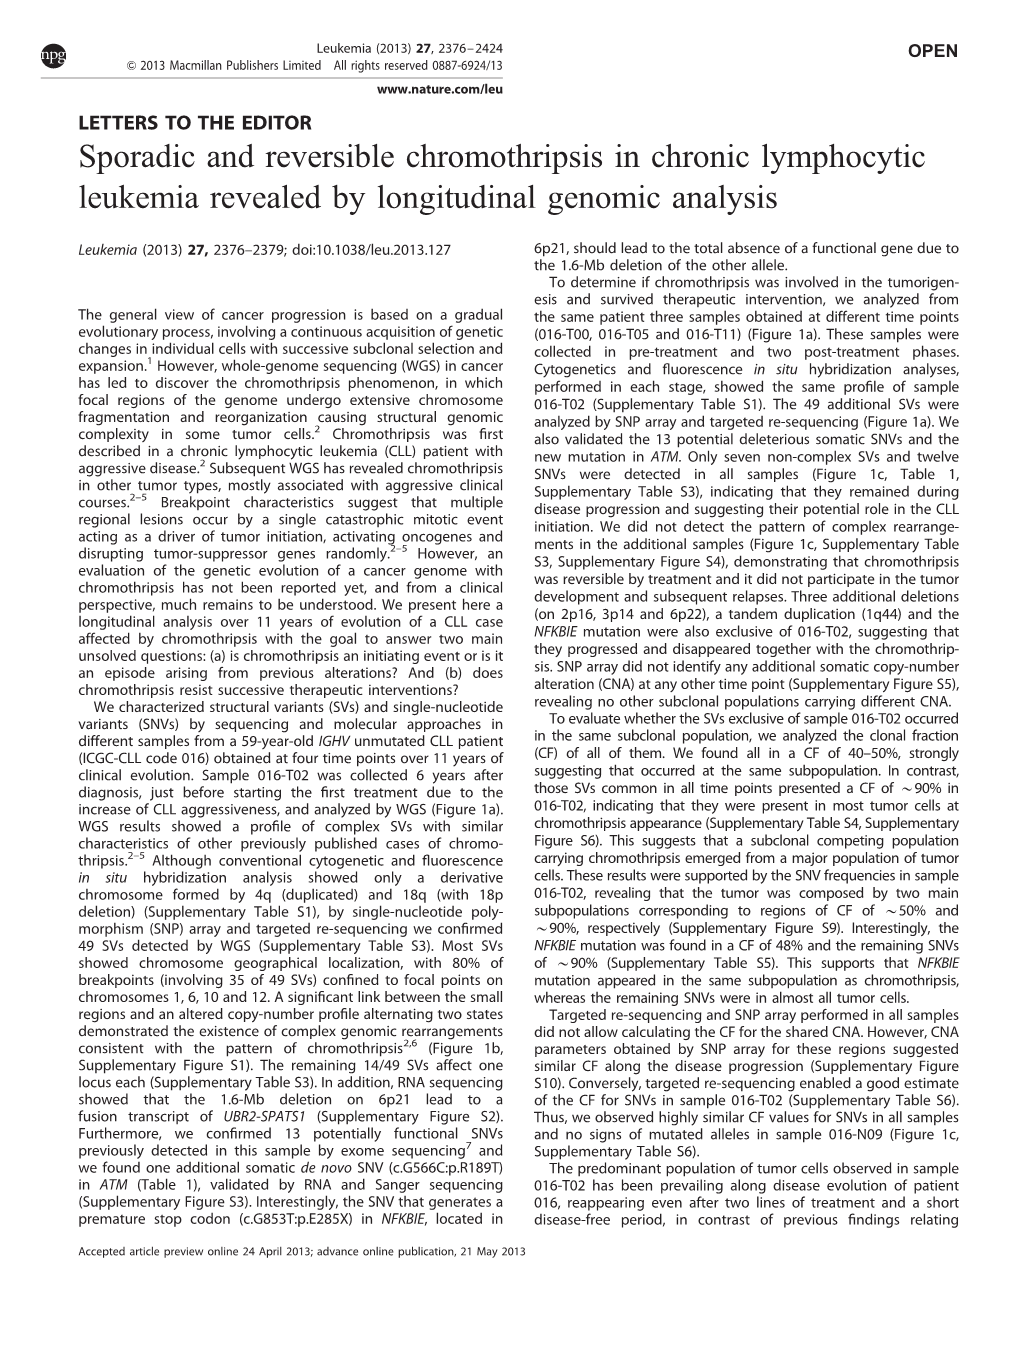 Sporadic and Reversible Chromothripsis in Chronic Lymphocytic Leukemia Revealed by Longitudinal Genomic Analysis